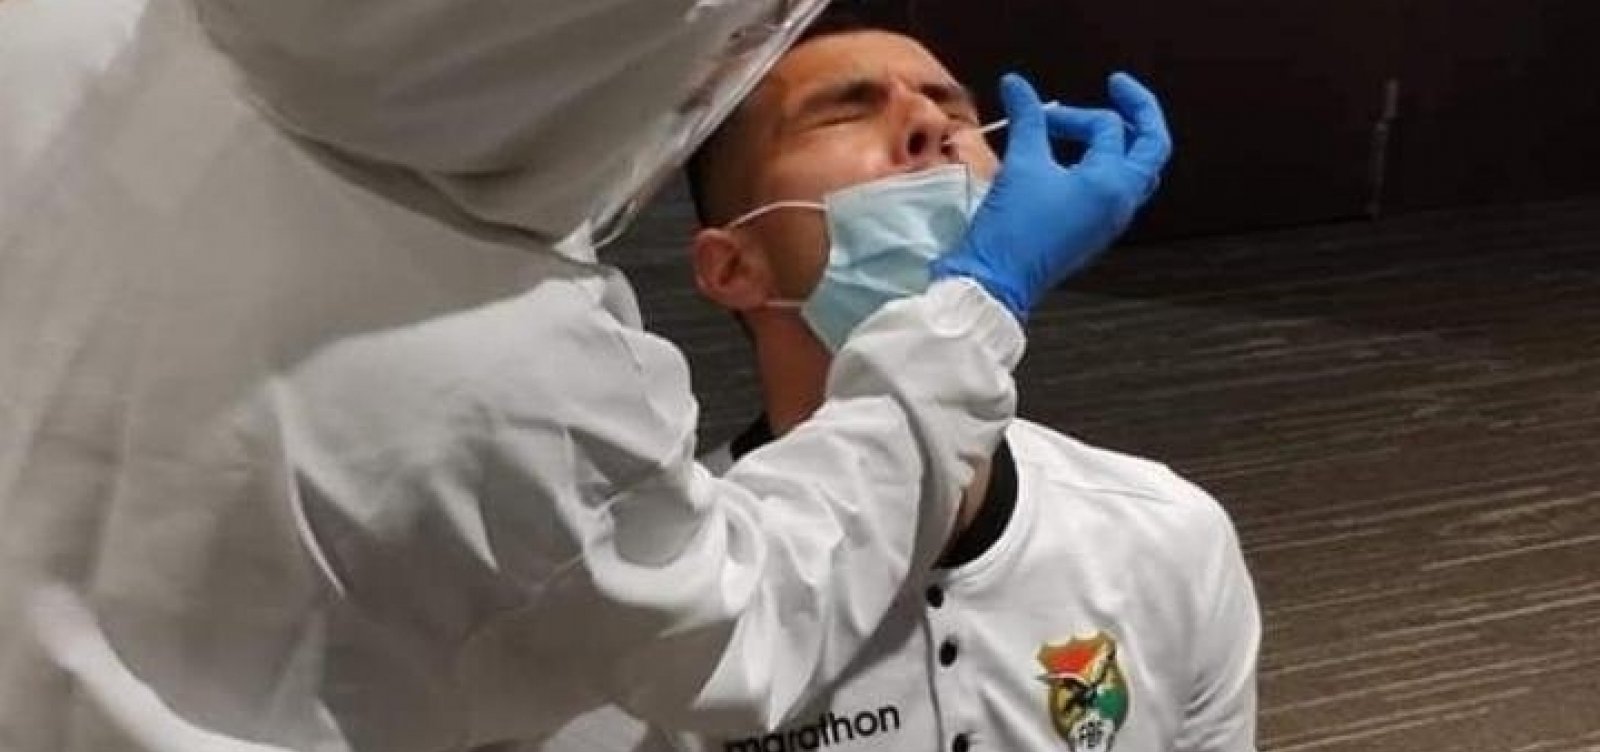 Copa América: quatro membros da seleção da Bolívia são diagnosticados com Covid-19